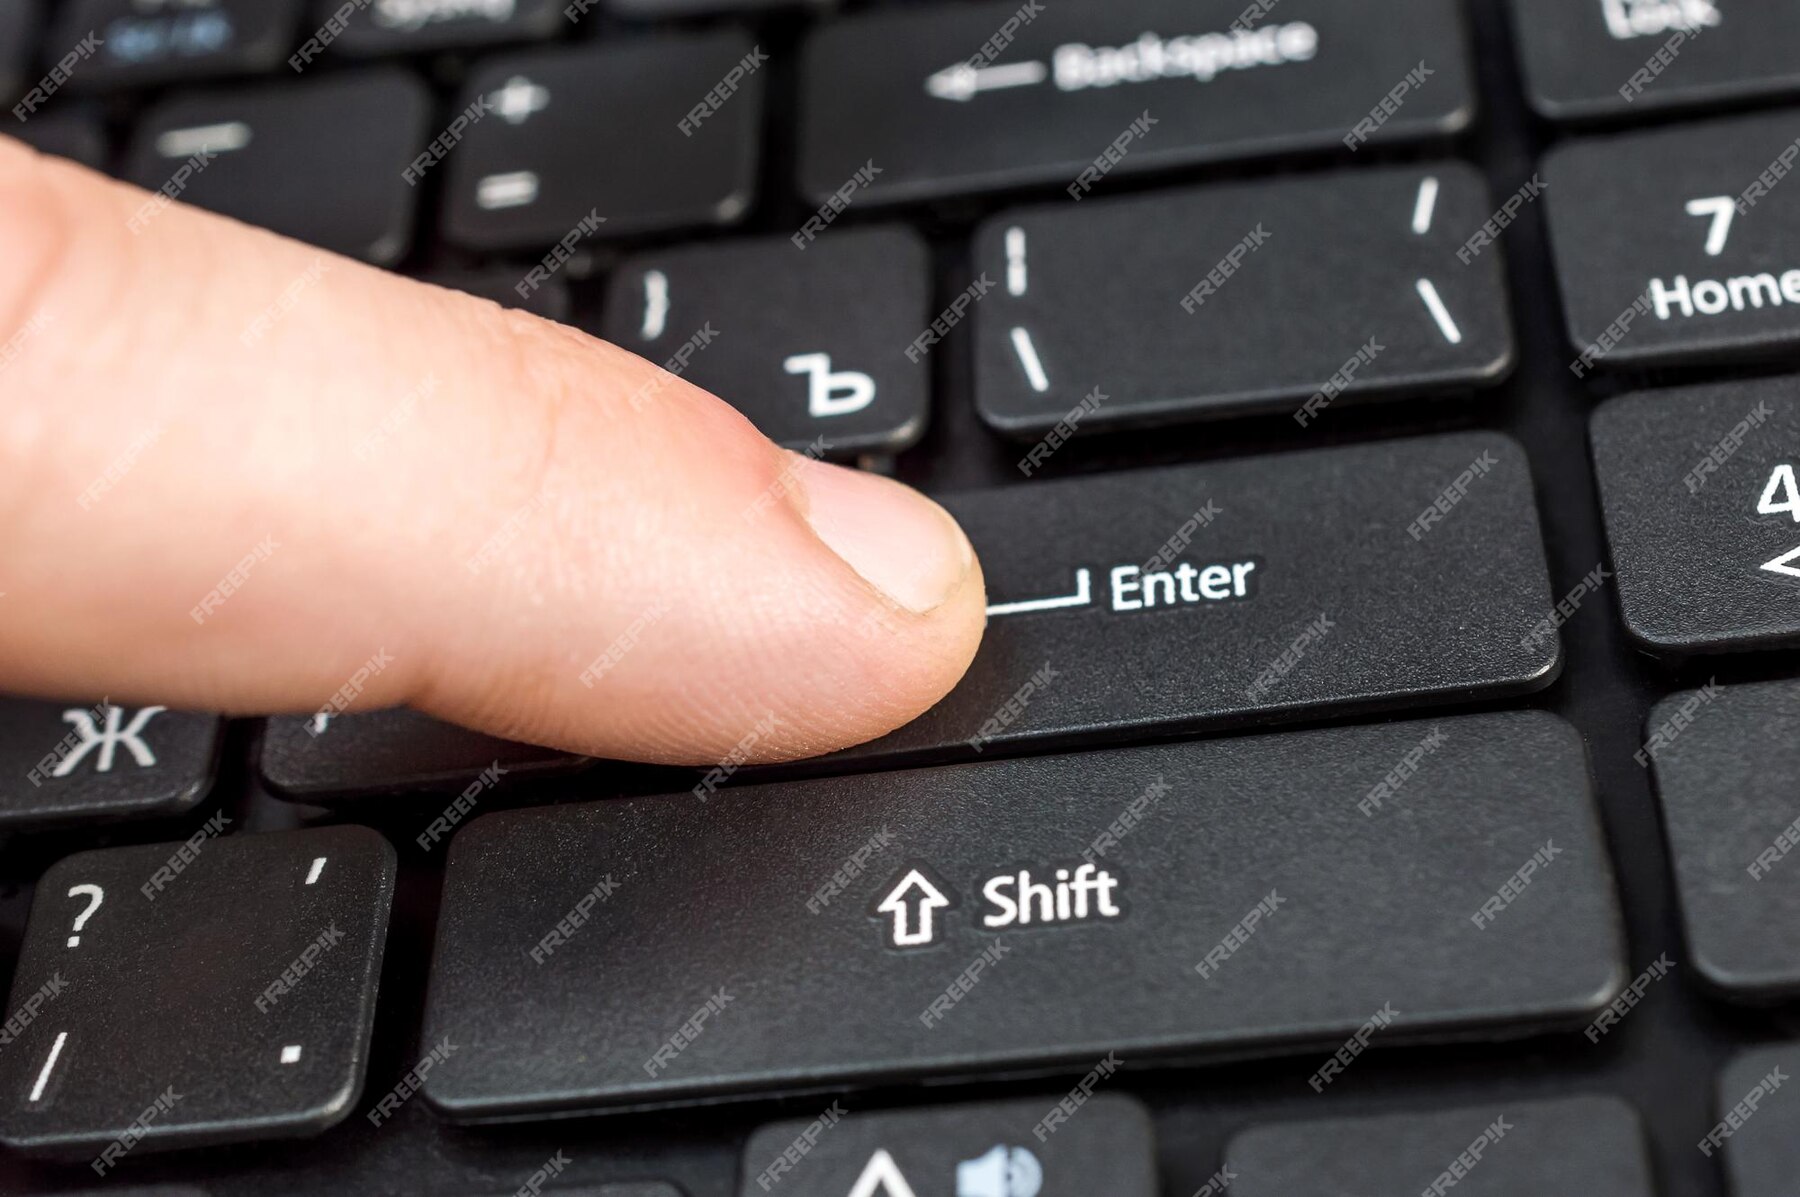 men-s-finger-pushing-key-enter-laptop-keyboard-close-up_547271-3029.jpg